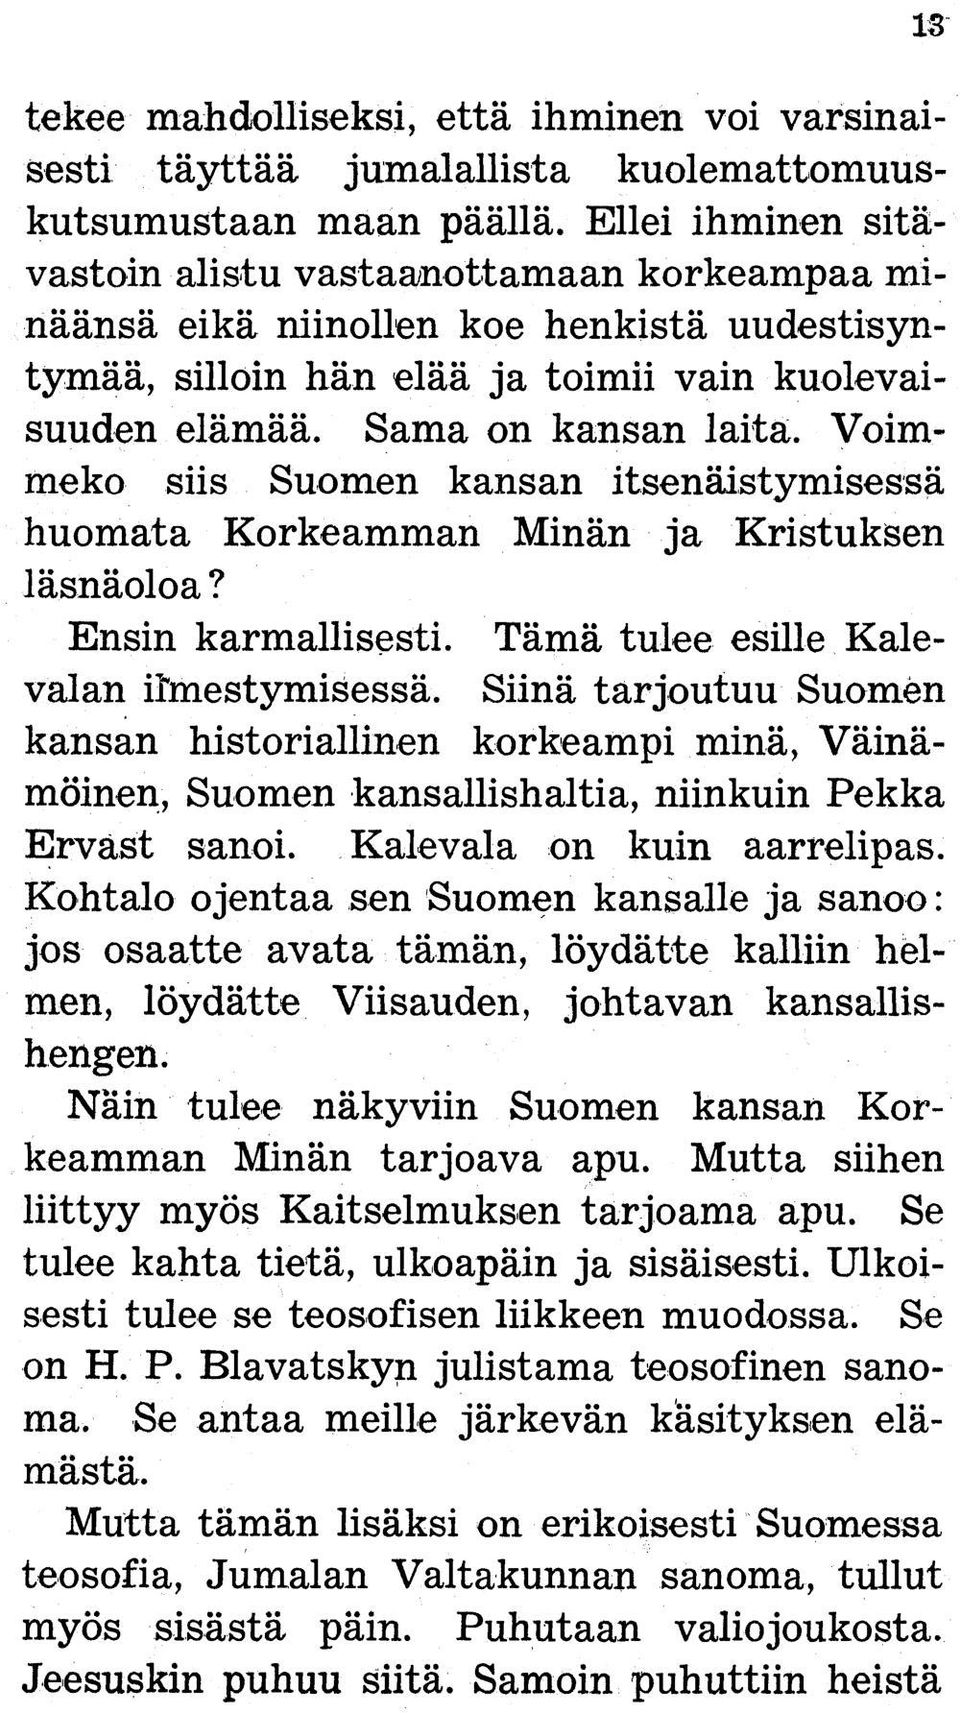 Voimmeko siis Suomen kansan itsenäistymisessä huomata Korkeamman Minän ja Kristuksen läsnäoloa? Ensin karmallisesti. Tämä tulee esille Kalevalan ilmestymisessä.